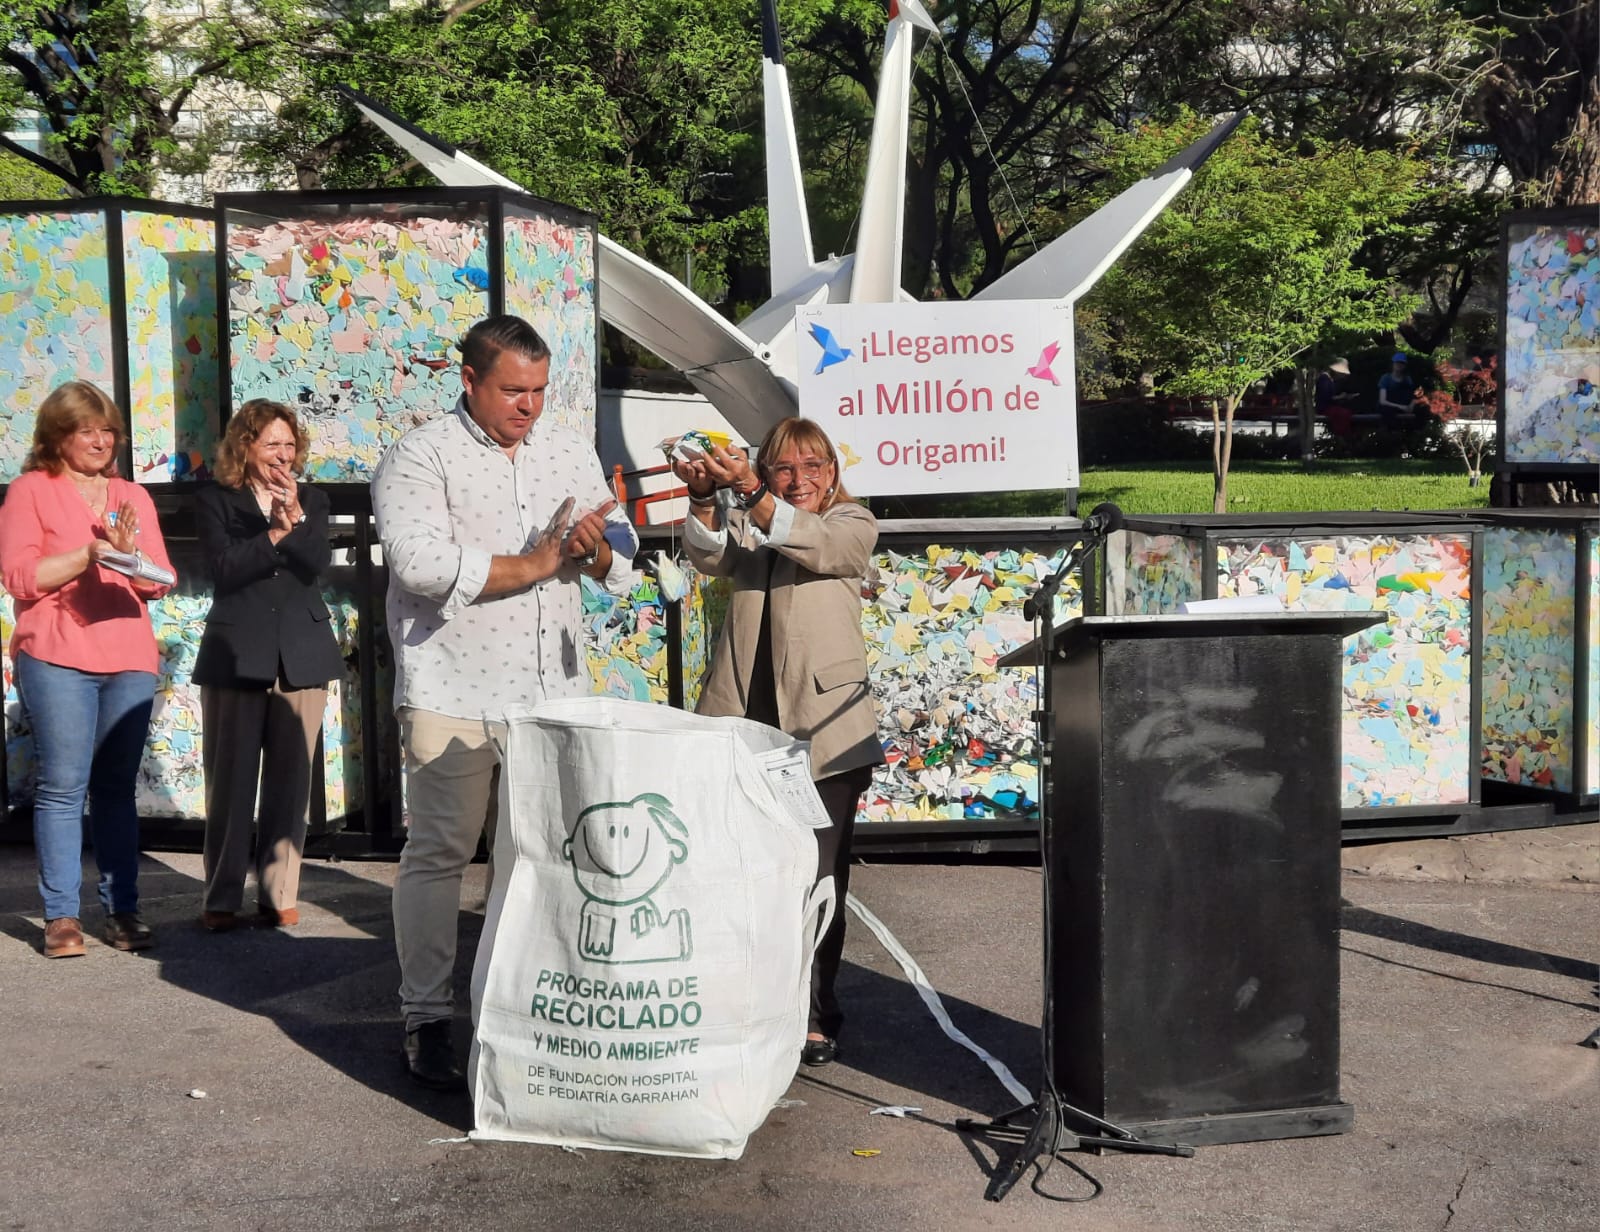 Donación de un millón de origamis al Programa de Reciclado y Medio Ambiente de Fundación